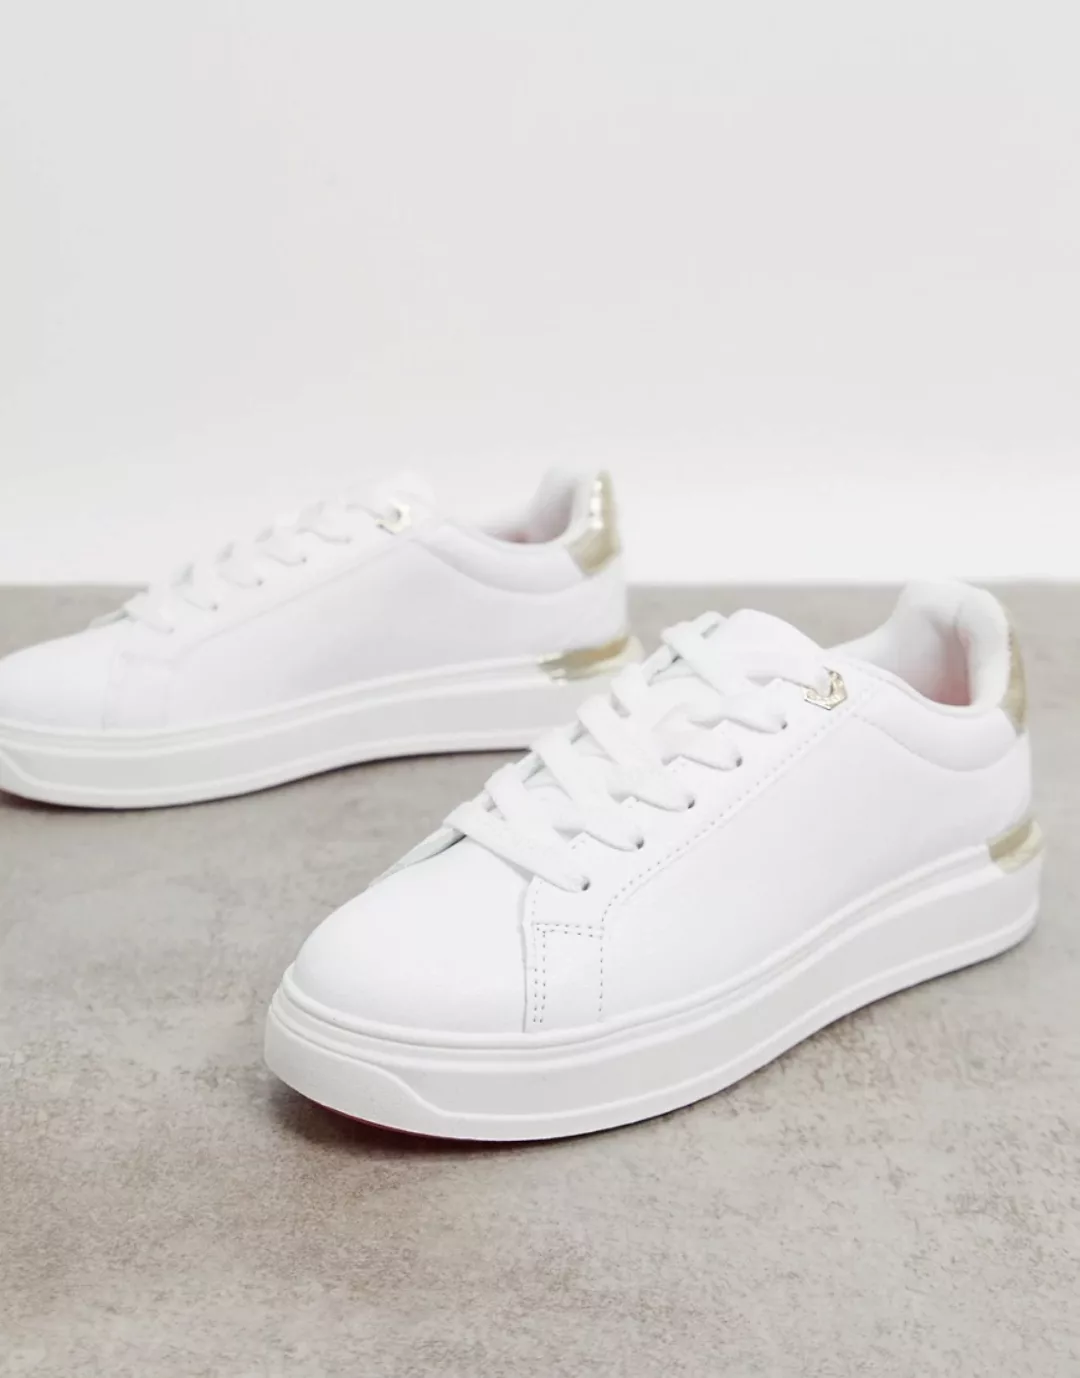 River Island – Sneaker in Weiß mit goldenem Besatz und Sohle in Neonfarbe günstig online kaufen